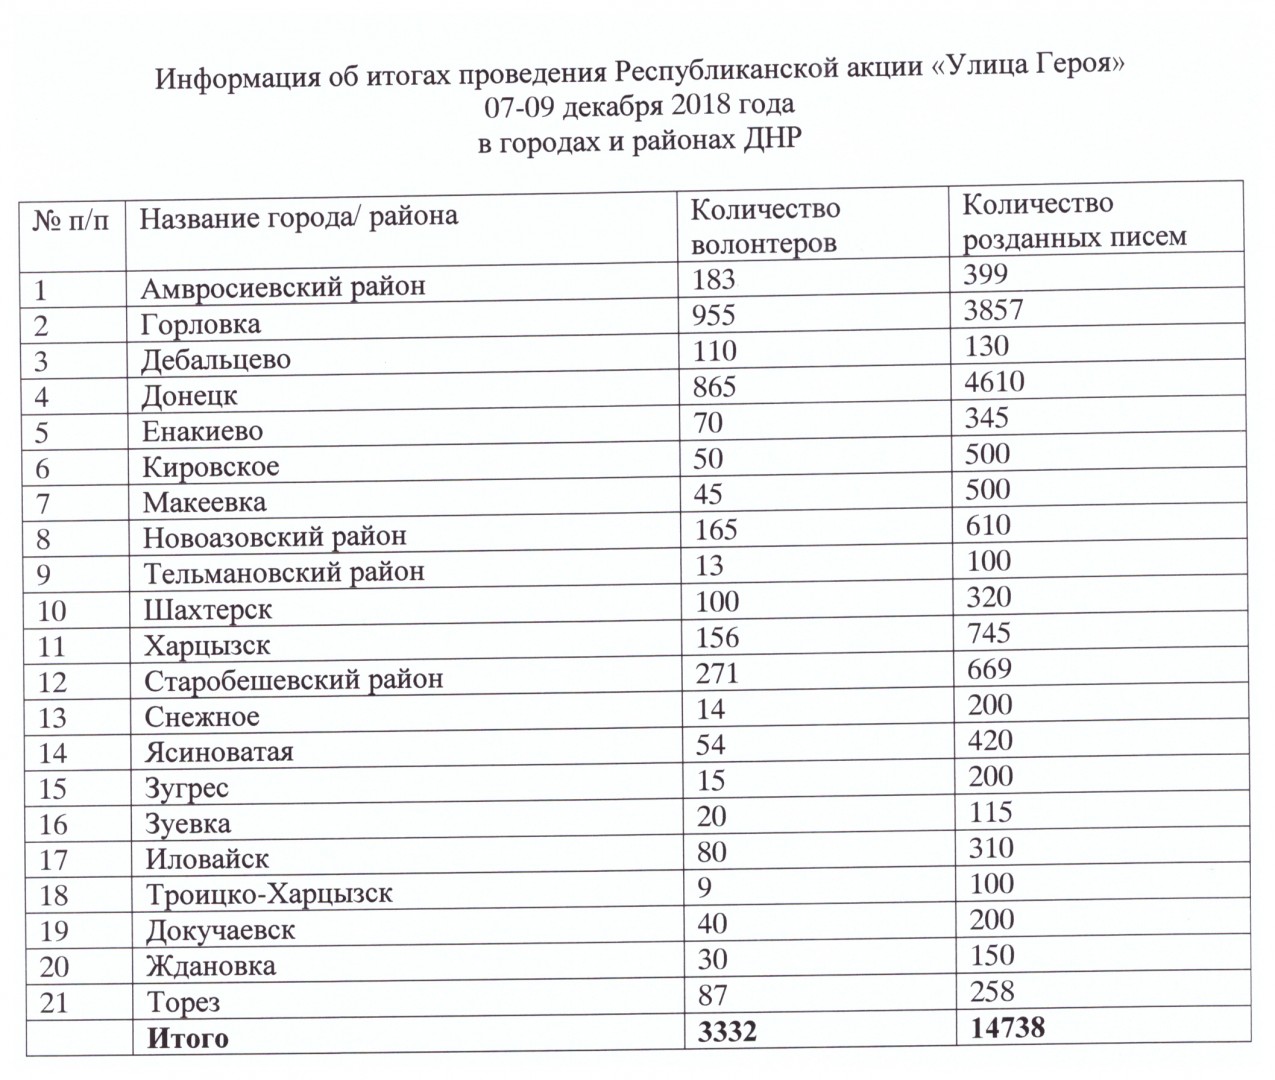 Более 14000 фронтовых писем раздали жителям ДНР волонтеры акции «Улица Героя»